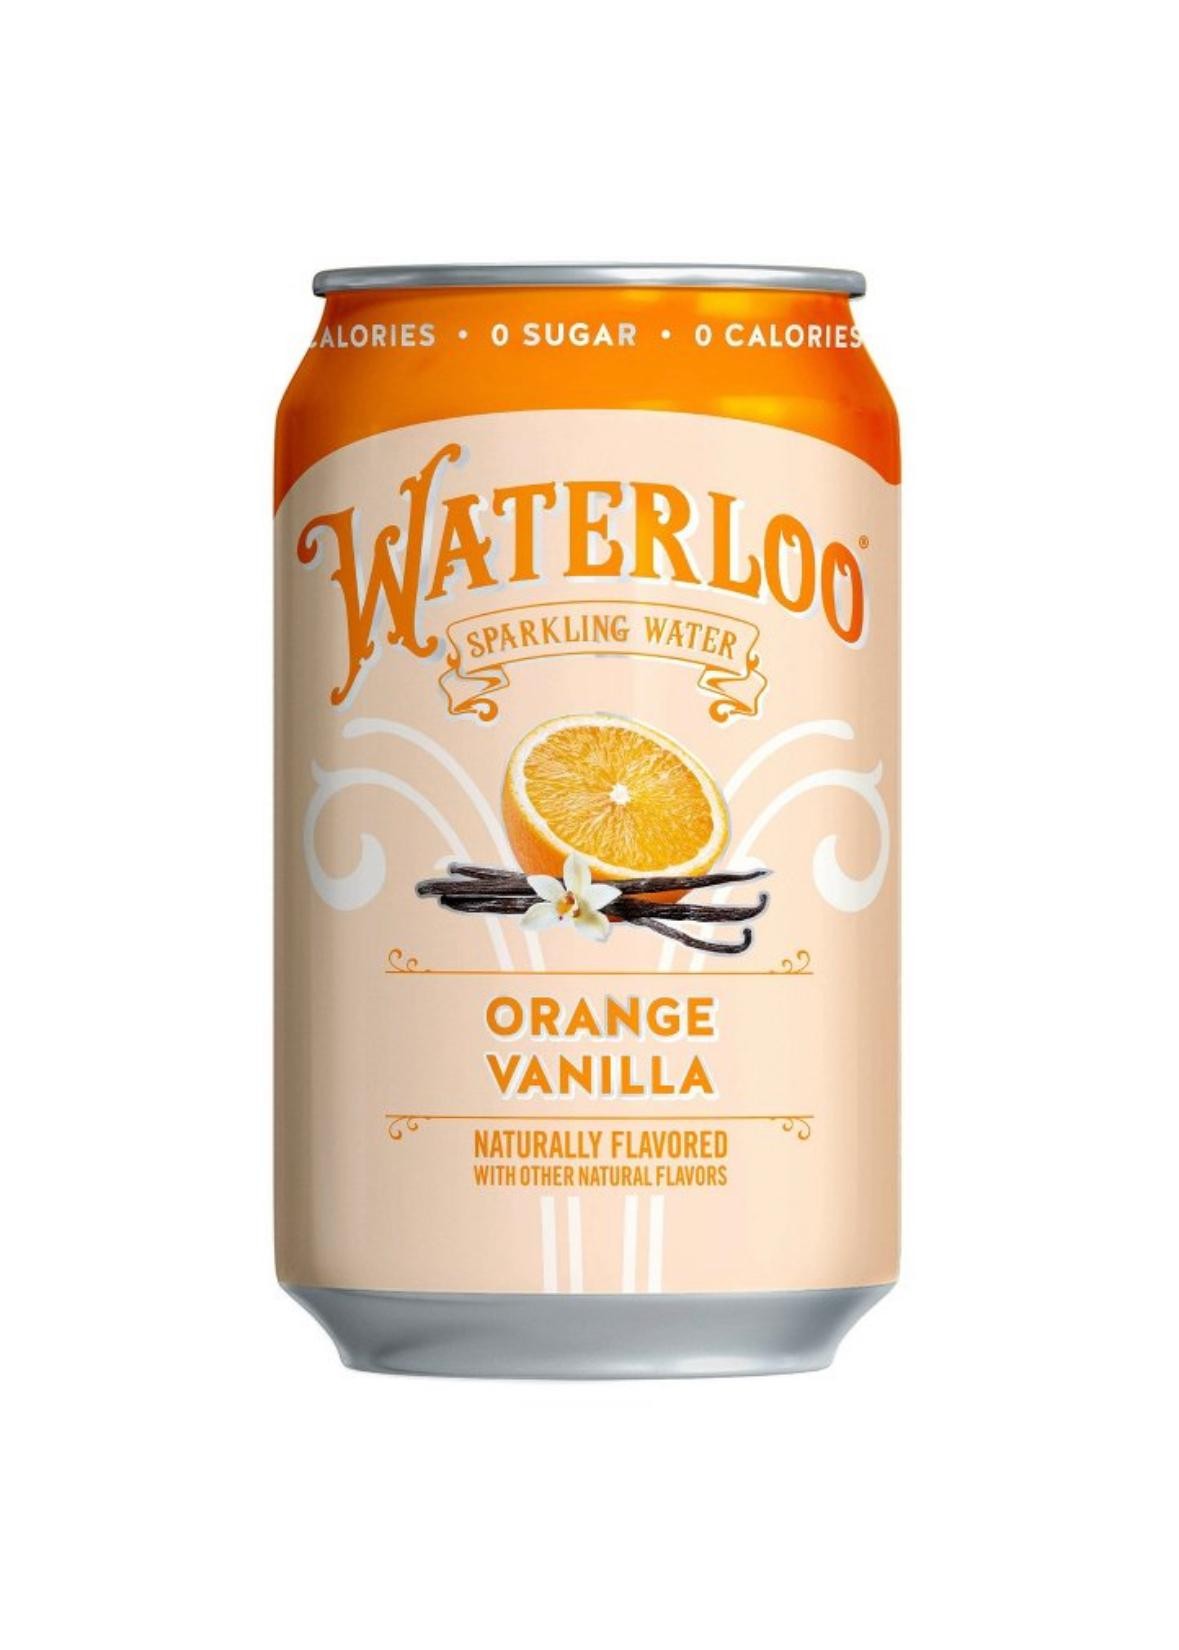 Orange Vanilla Waterloo